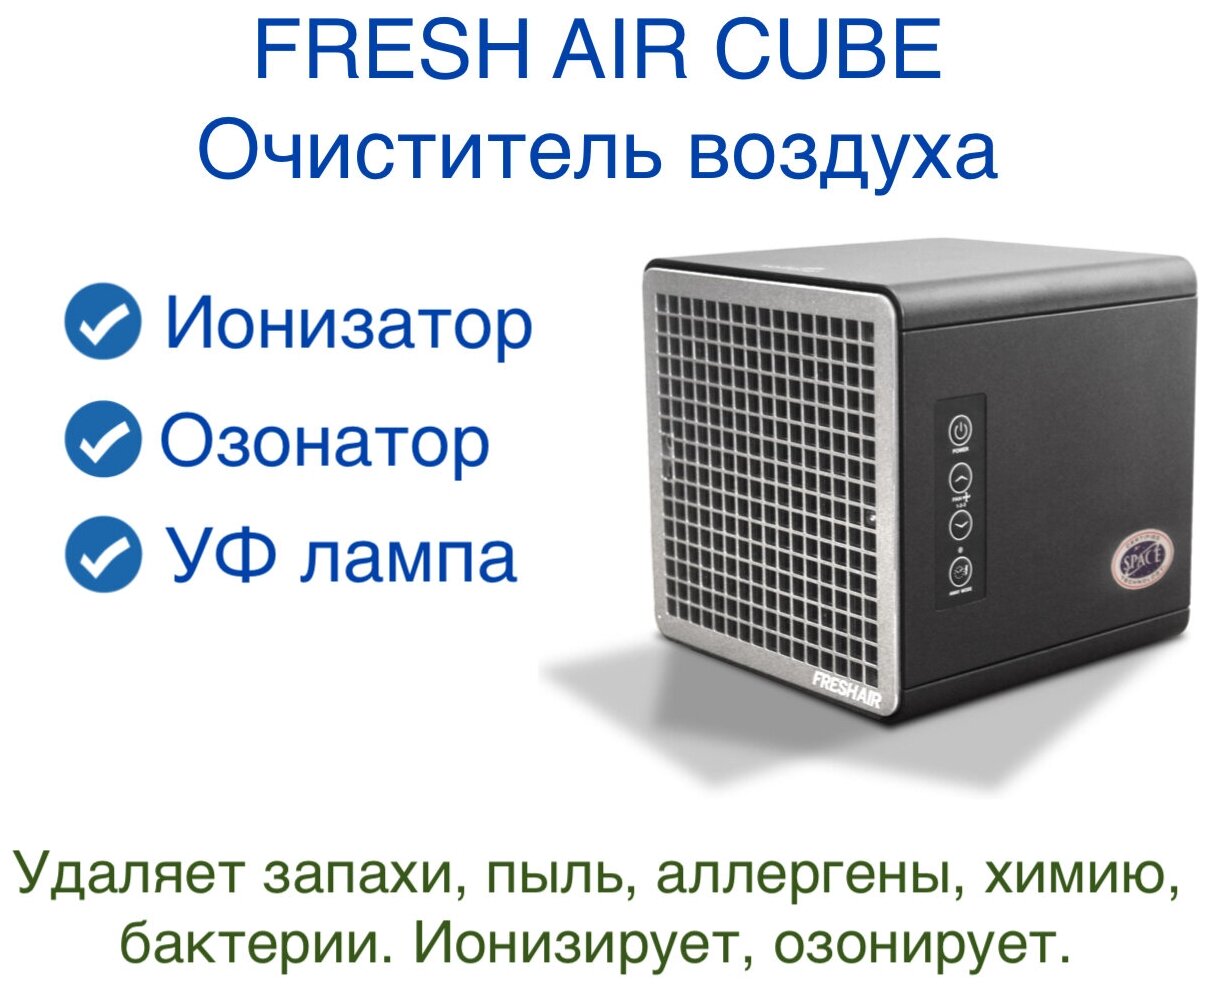 Очиститель воздуха Fresh Air Cube. Рециркулятор. Функция дезинфекции. Ионизатор. Озонатор. Без фильтров. Удаляет запахи, вирусы, бактерии, пыль. - фотография № 1